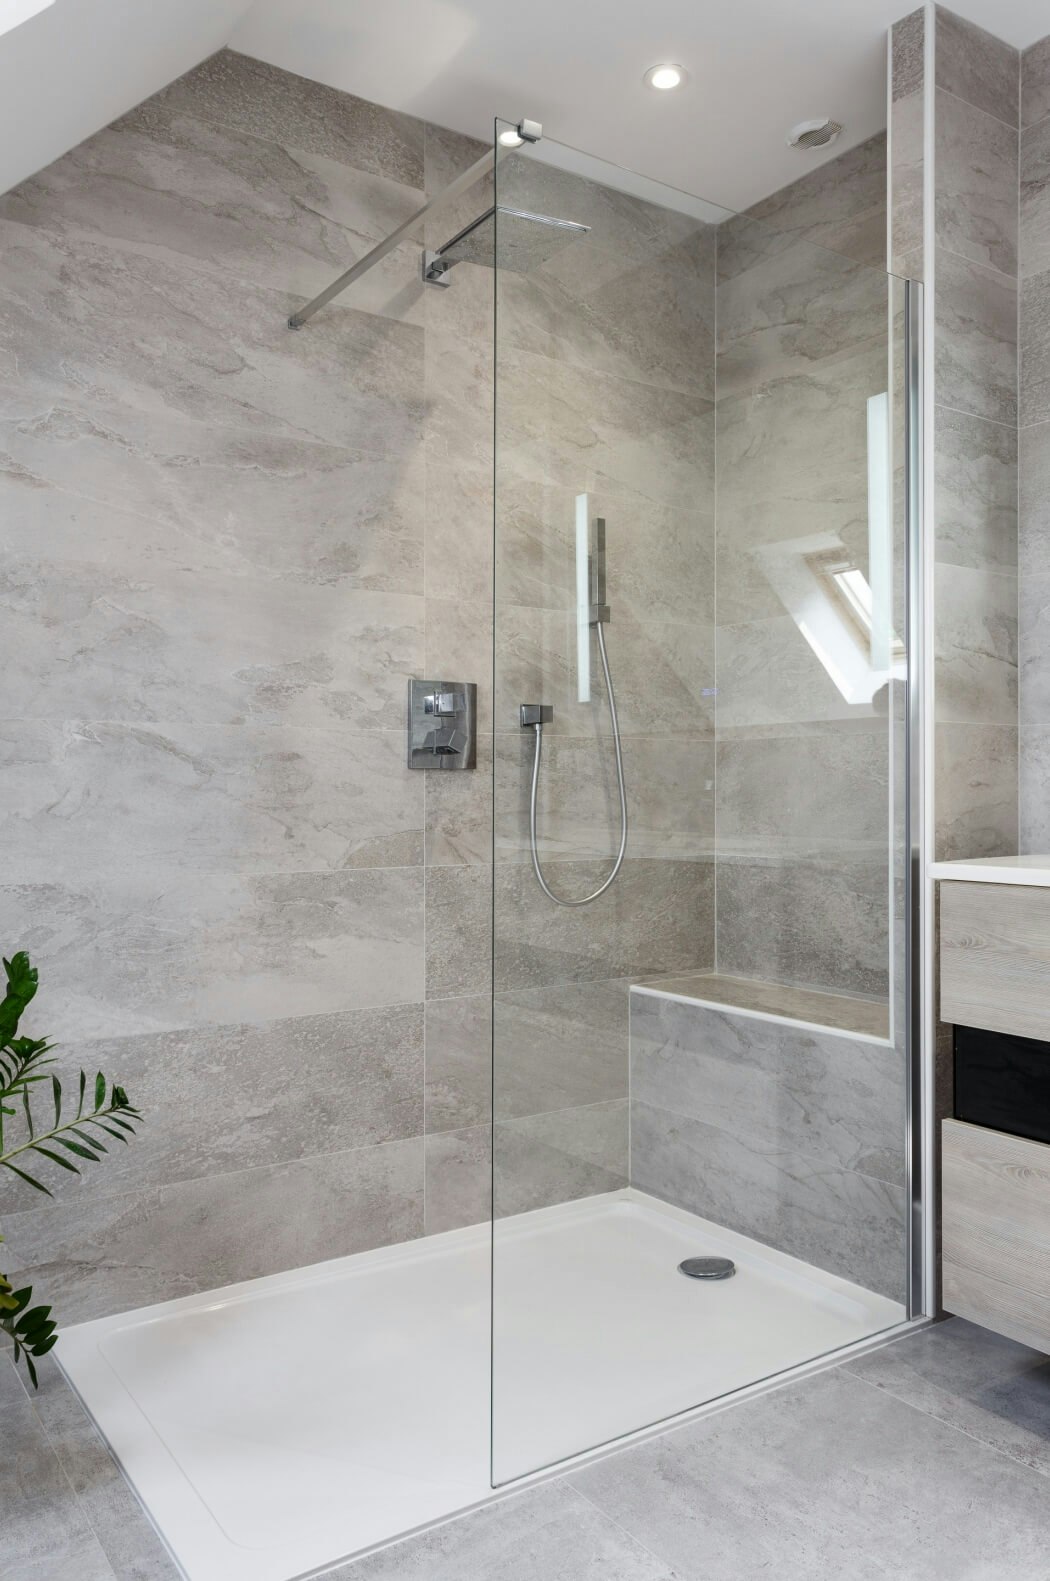 Ambiance naturelle et reposante dans cette salle de bain rénovée avec douche italienne